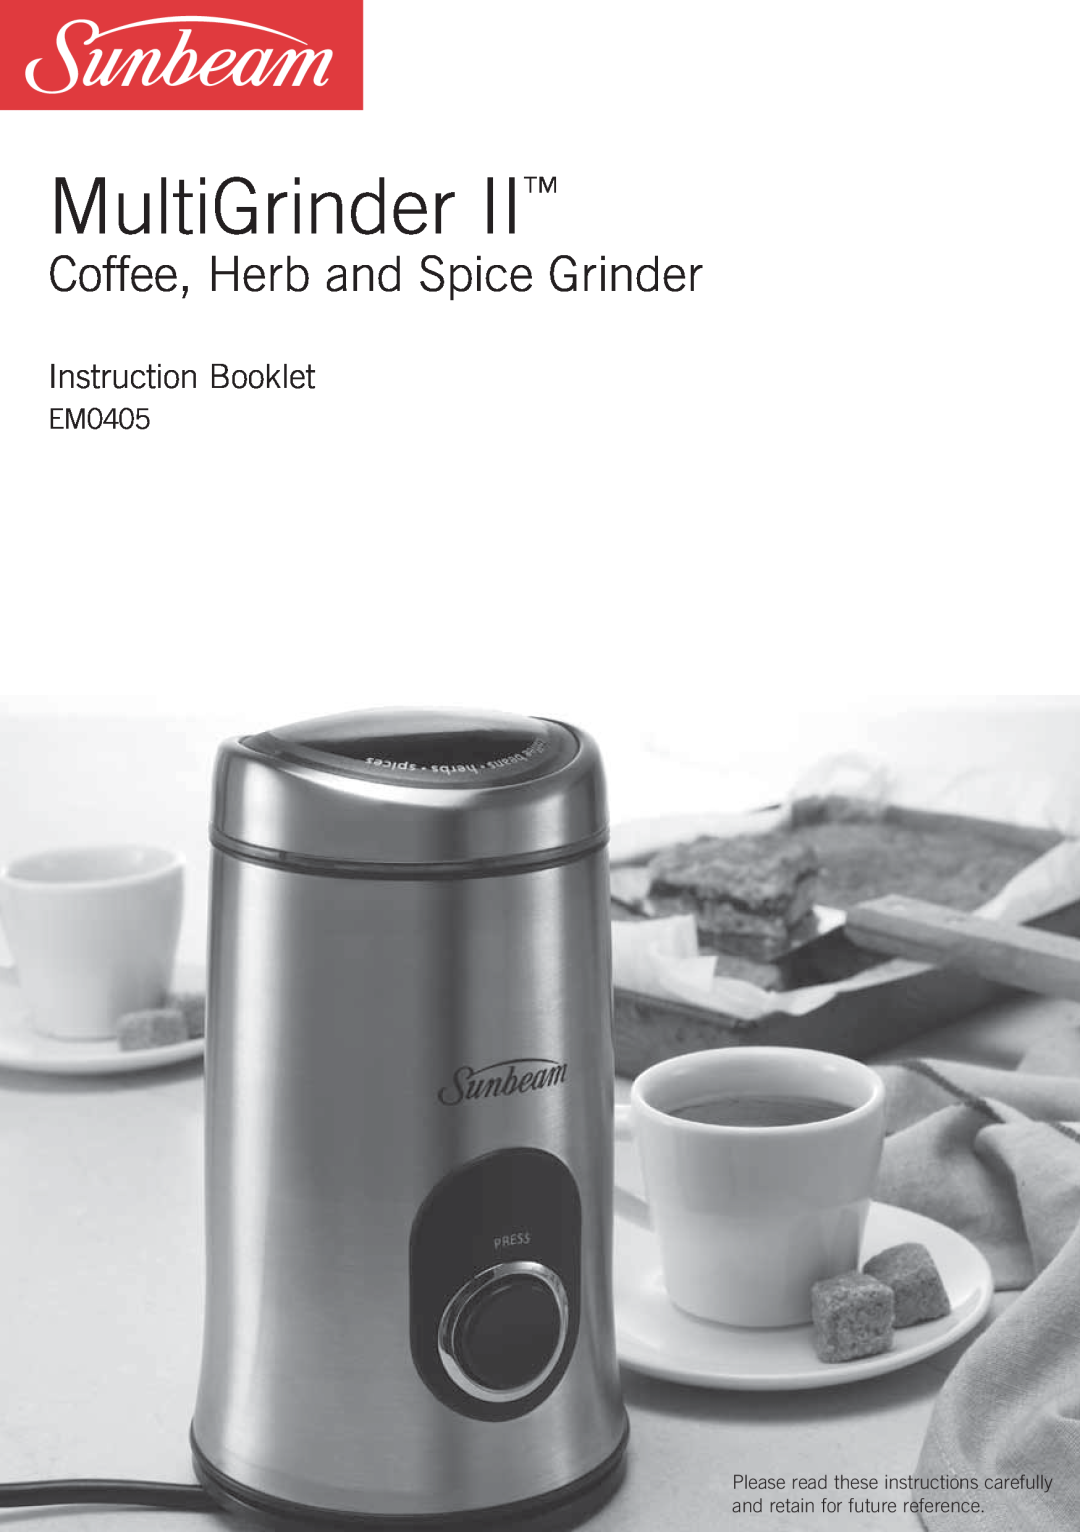 Sunbeam EM0405 manual MultiGrinder, Coffee, Herb and Spice Grinder, Instruction Booklet 